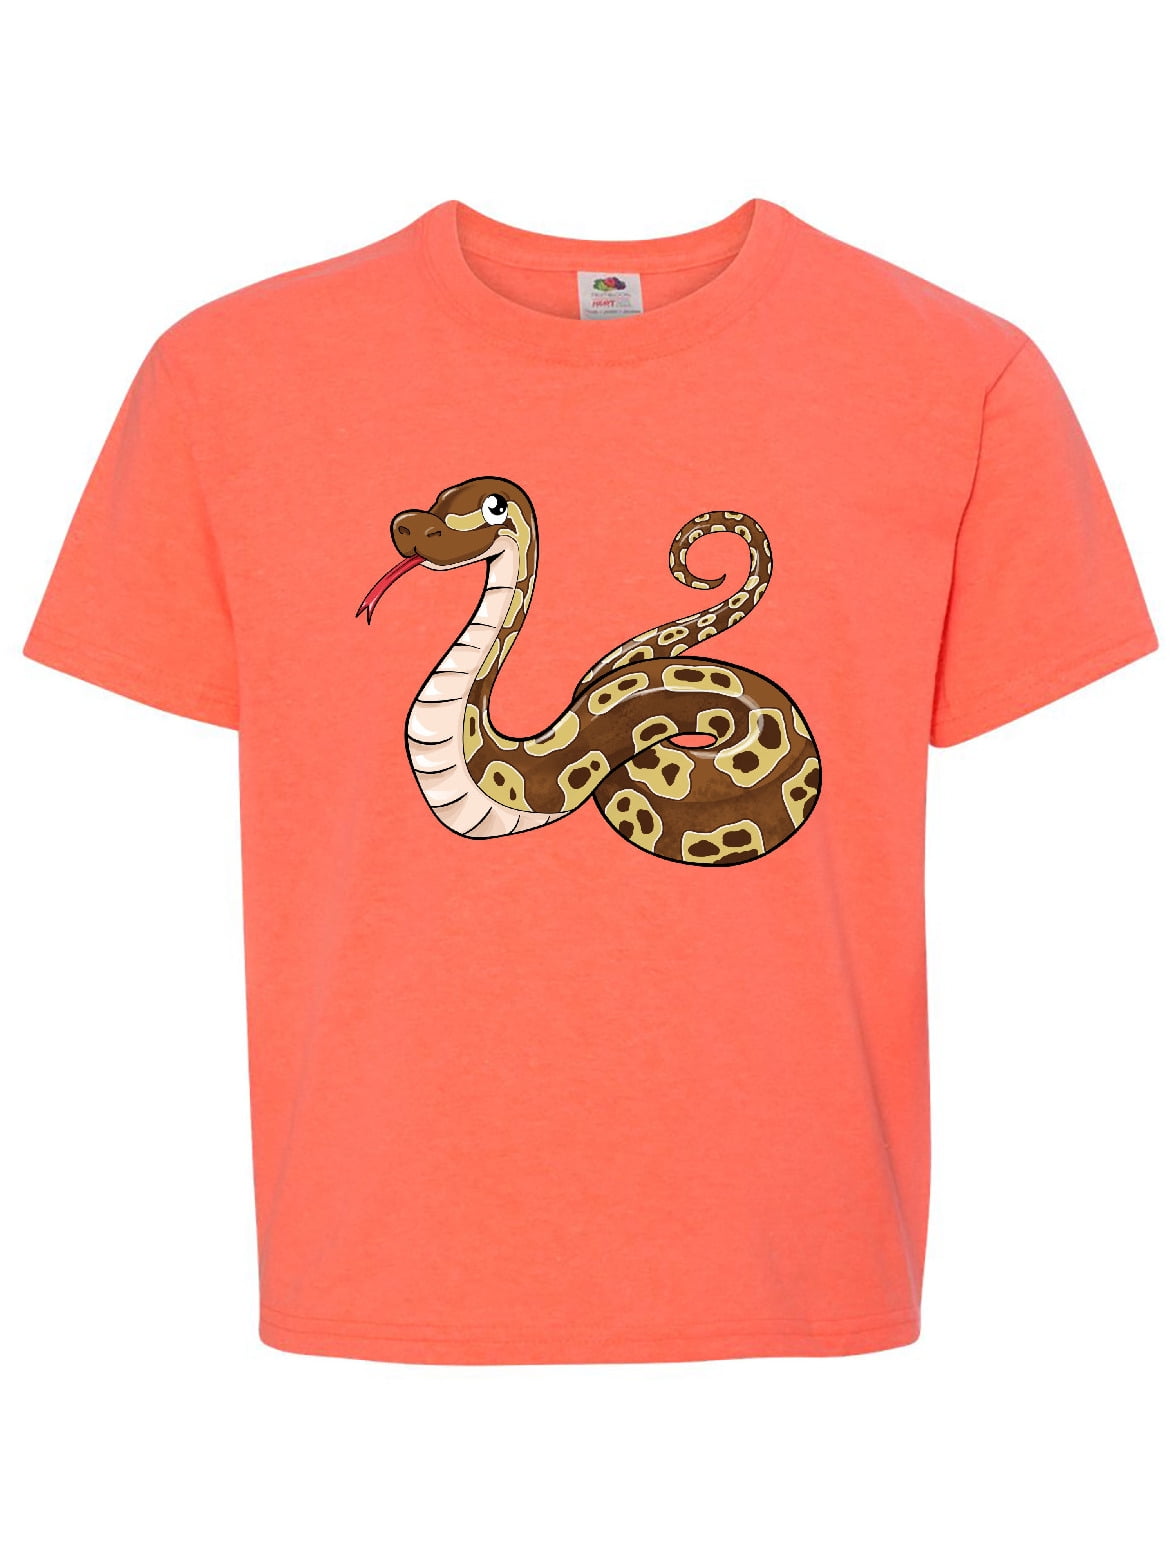 ball python shirt